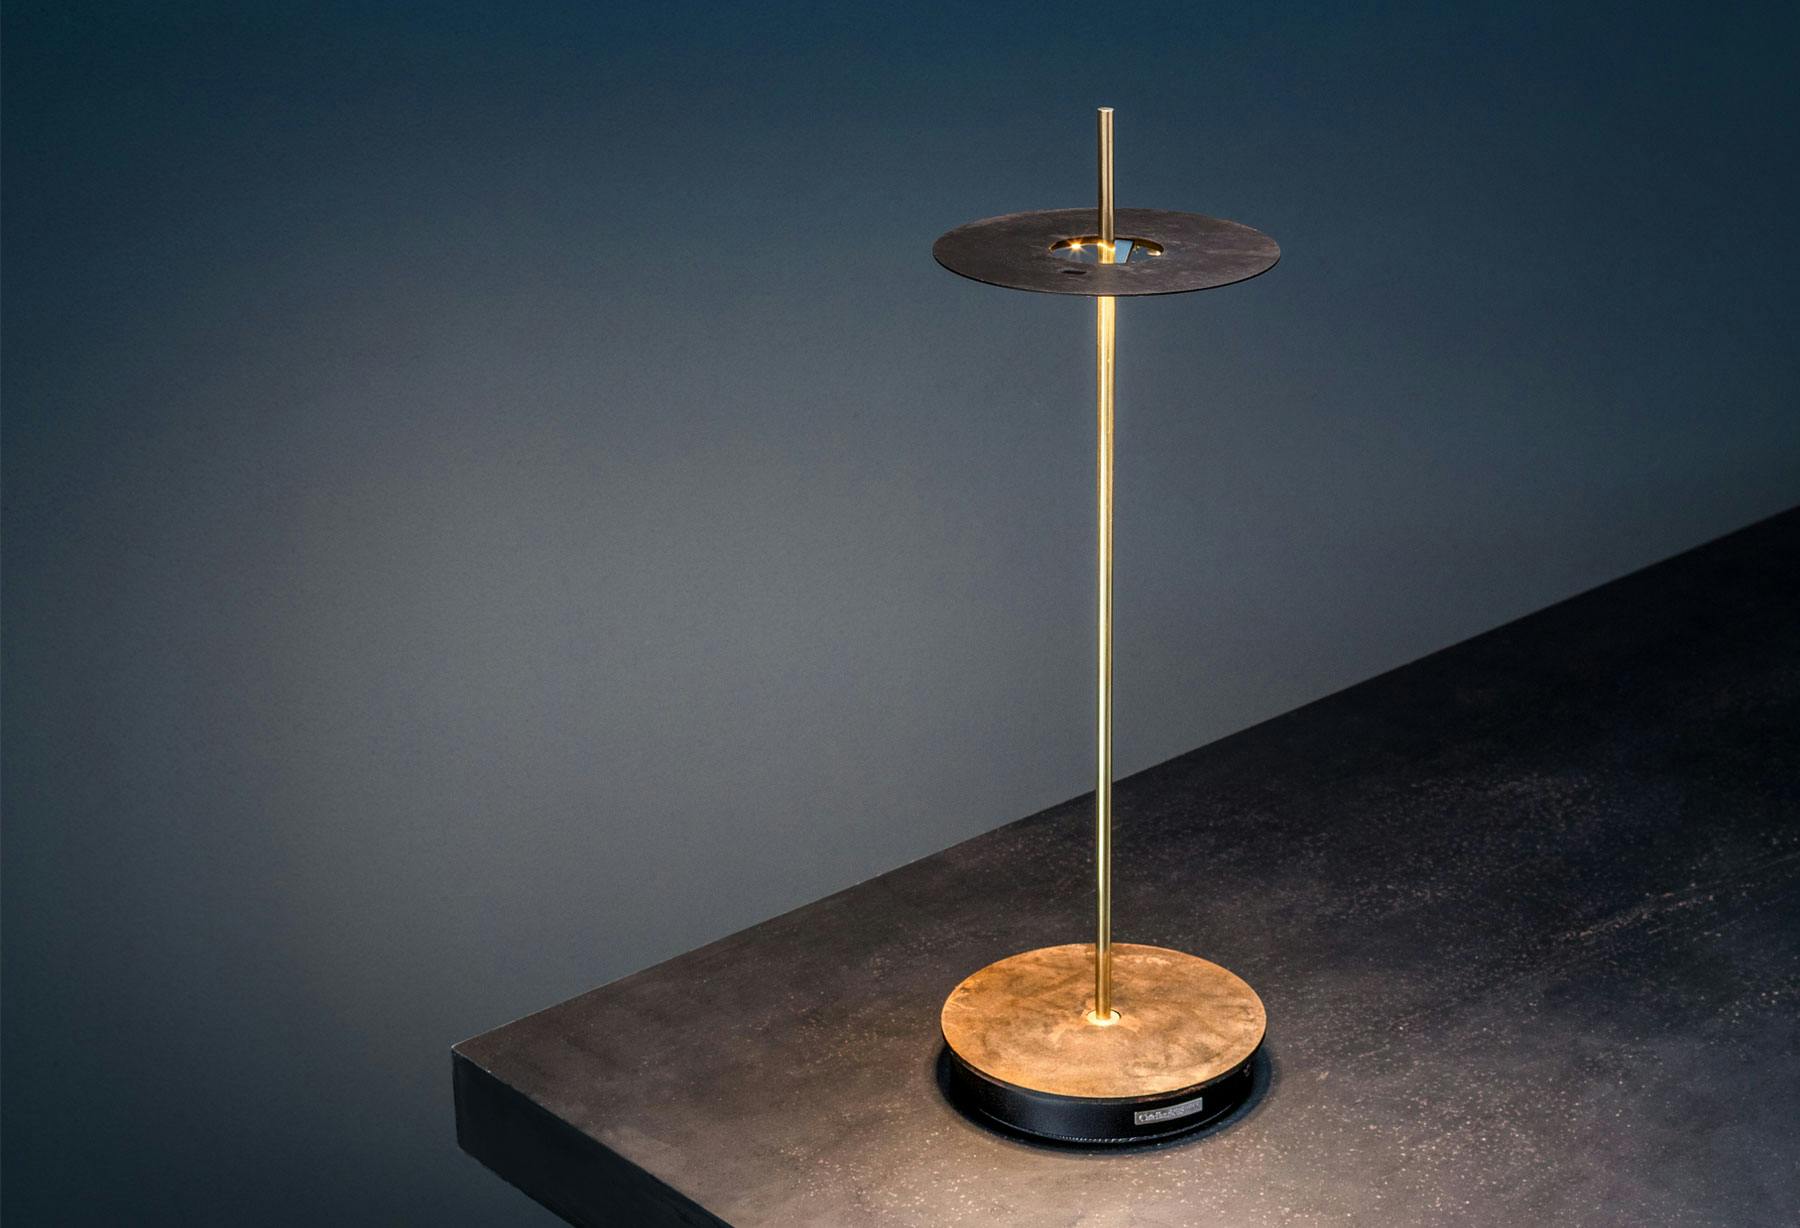 <p>Премия ADA (Archiproducts Design Awards): модель Giulietta BE T стала одним из победителей в категории «Освещение»</p>
